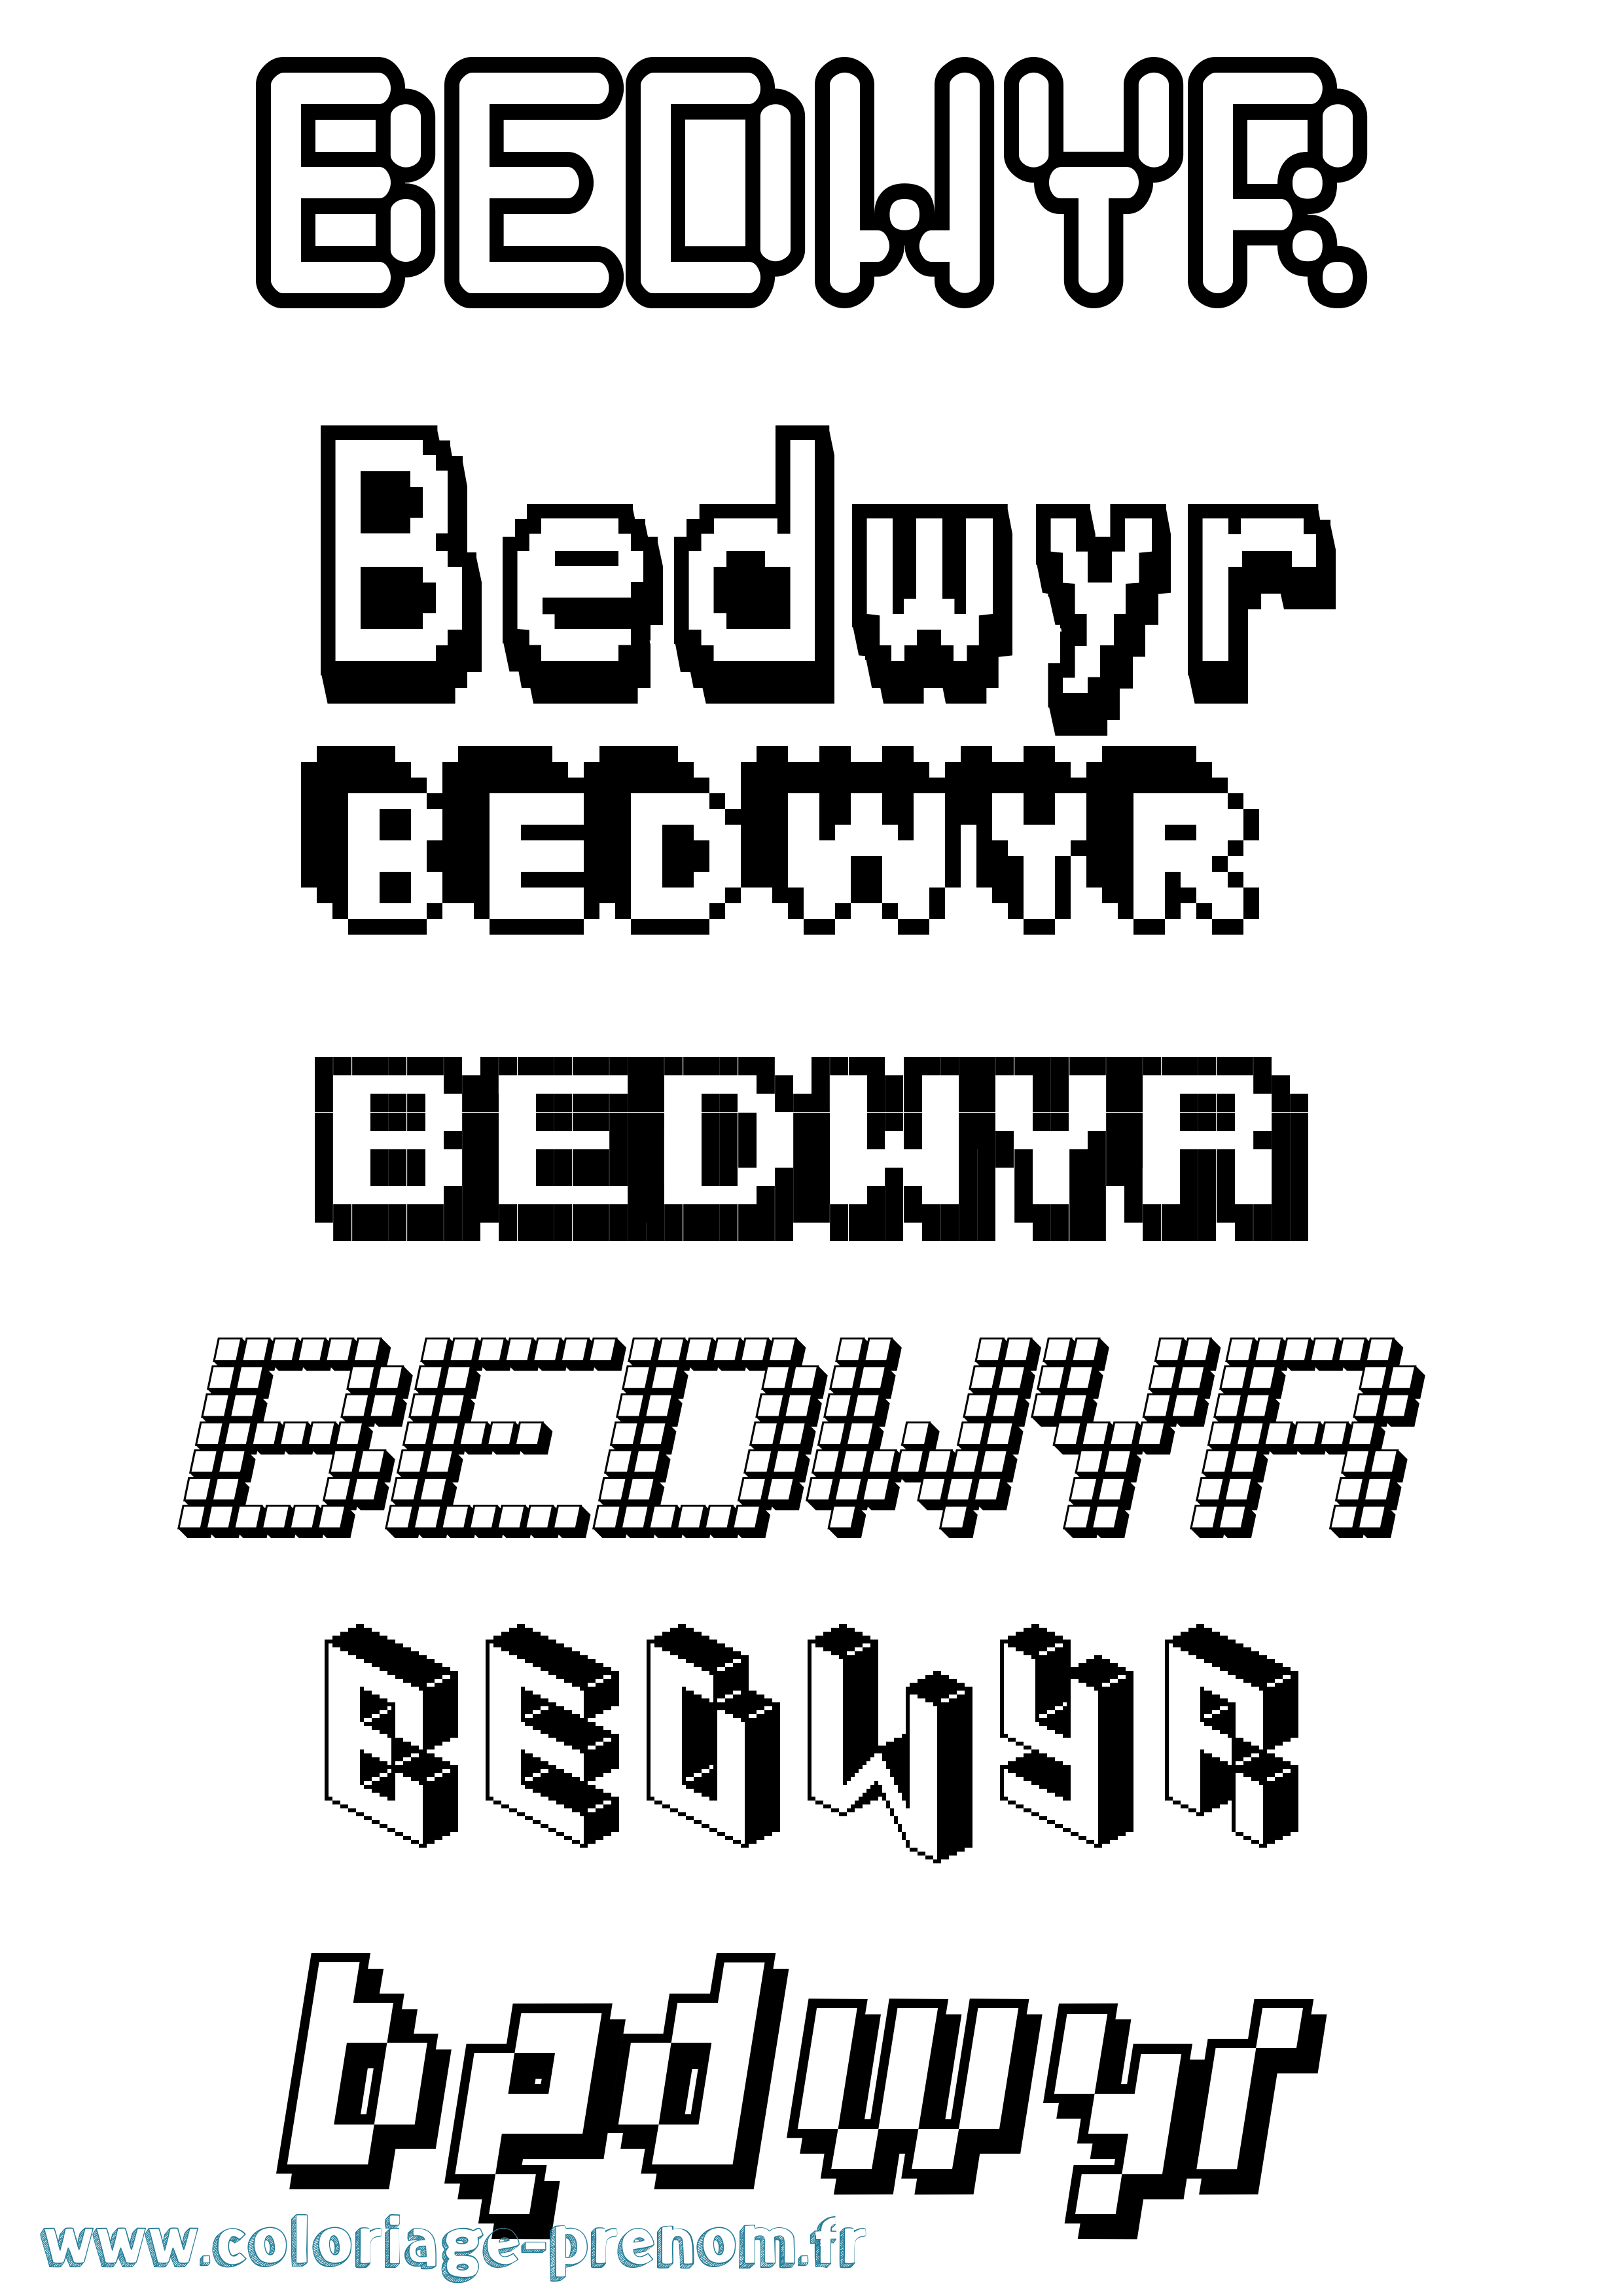 Coloriage prénom Bedwyr Pixel